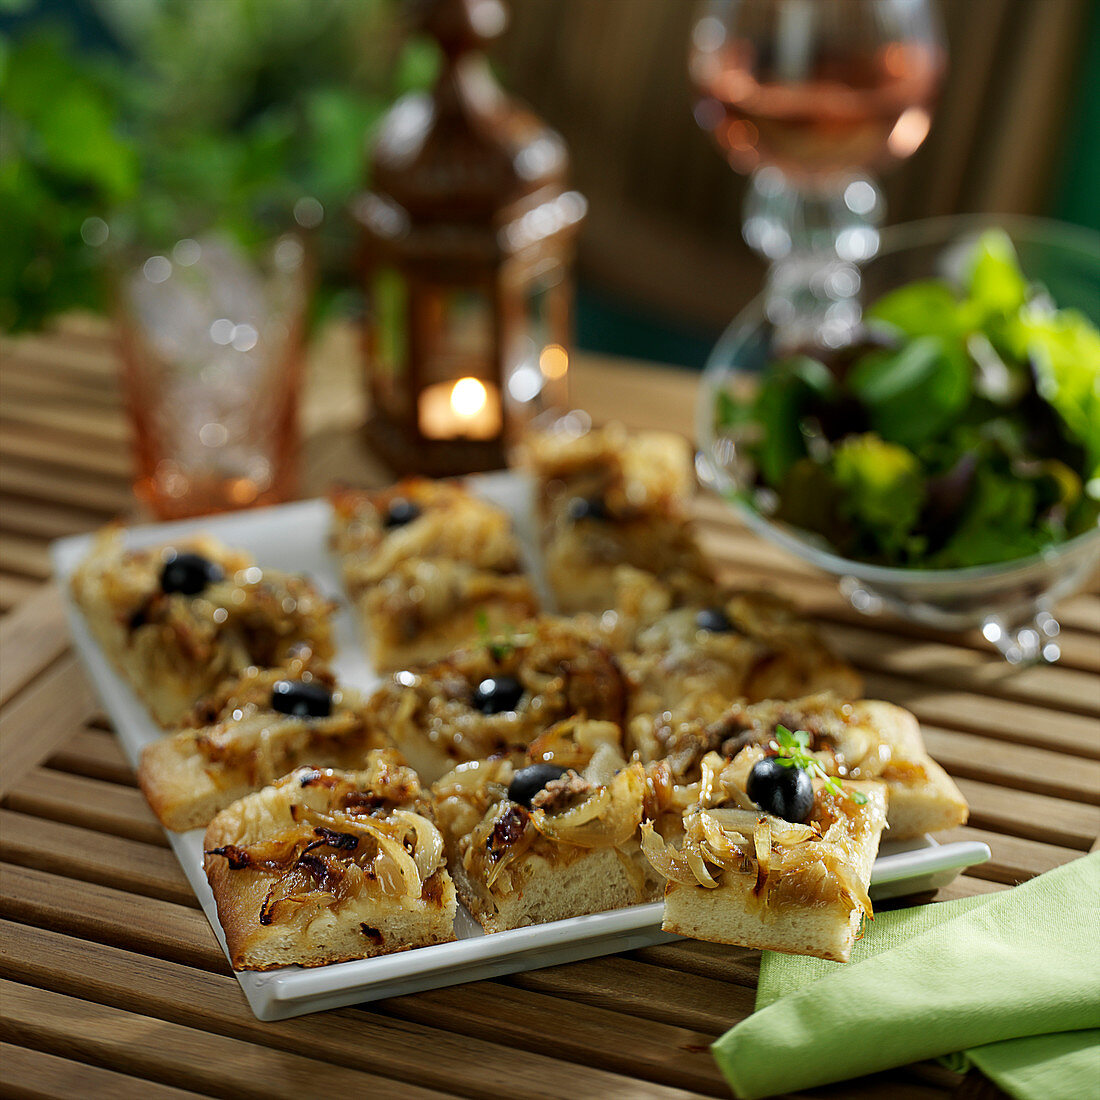 Pissaladière (Zwiebelkuchen mit Sardellen und Oliven) in Stücke geschnitten, zum Aperitif